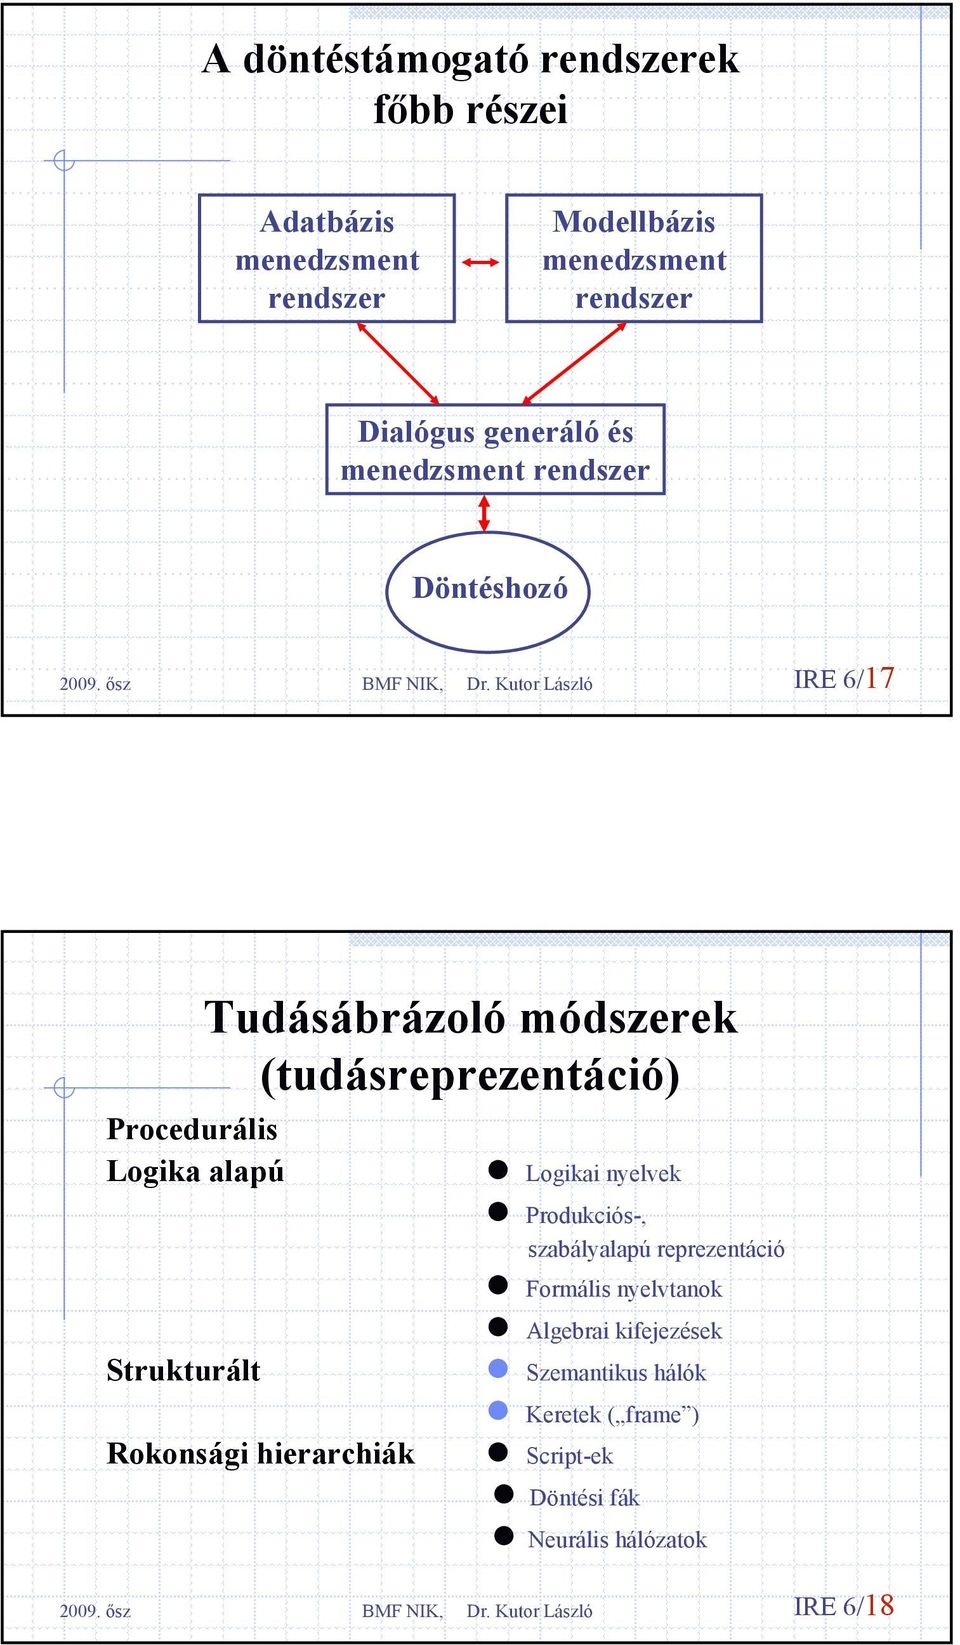 módszerek (tudásreprezentáció) Rokonsági hierarchiák Logikai nyelvek Produkciós-, szabályalapú reprezentáció